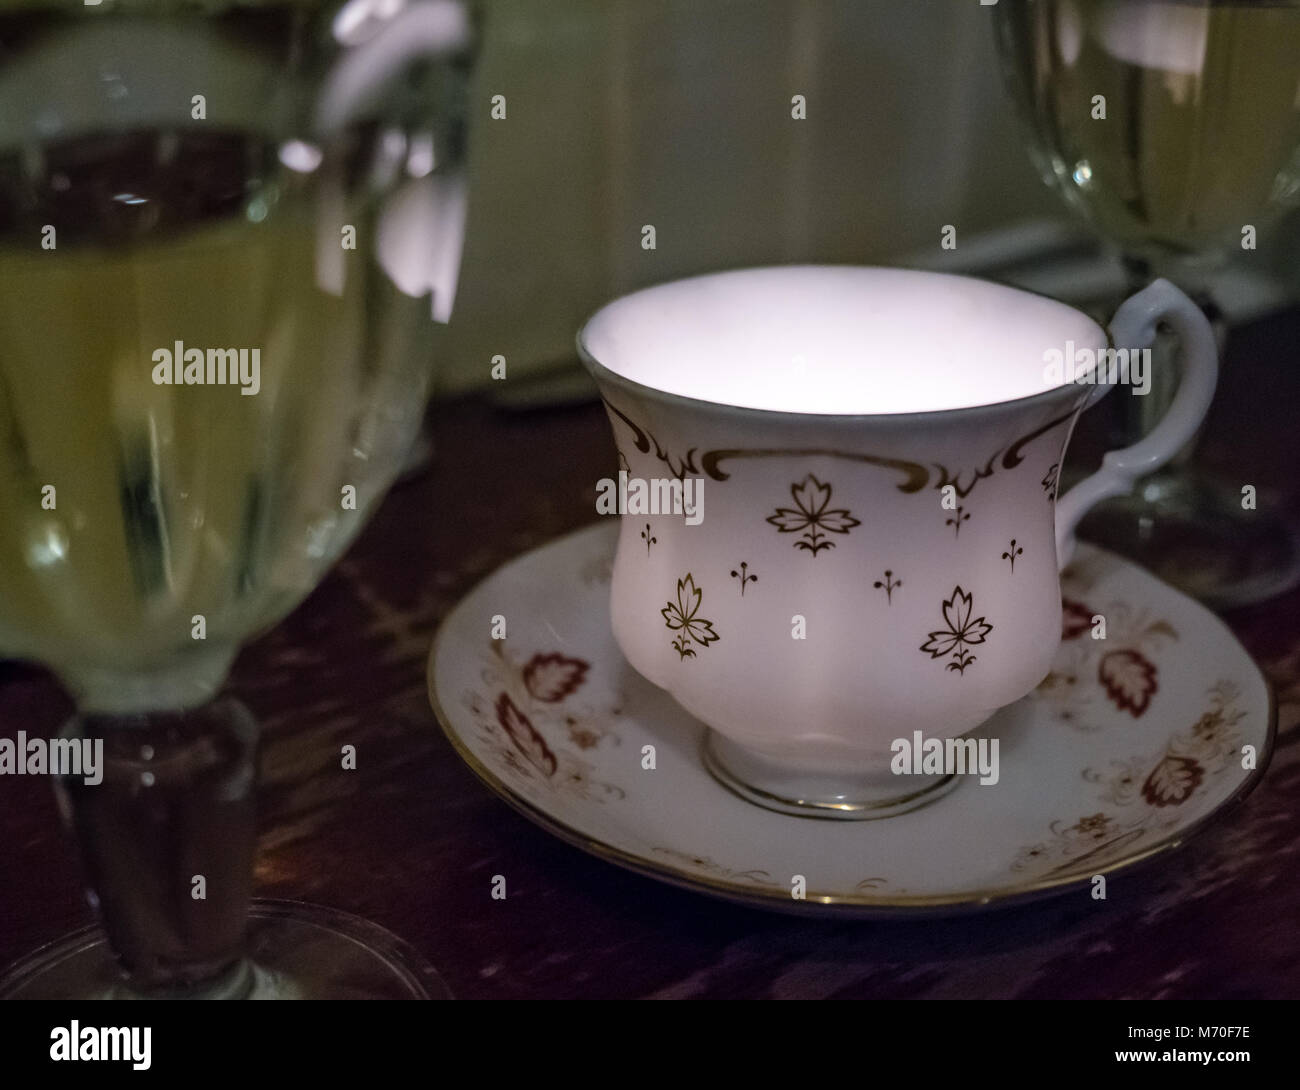 Nahaufnahme des altmodischen Kaffee Tasse und Untertasse mit Kerzenlicht, weißen Wein in Gläsern, Restaurant Tabelle, Leith, Edinburgh, Schottland, Großbritannien Stockfoto